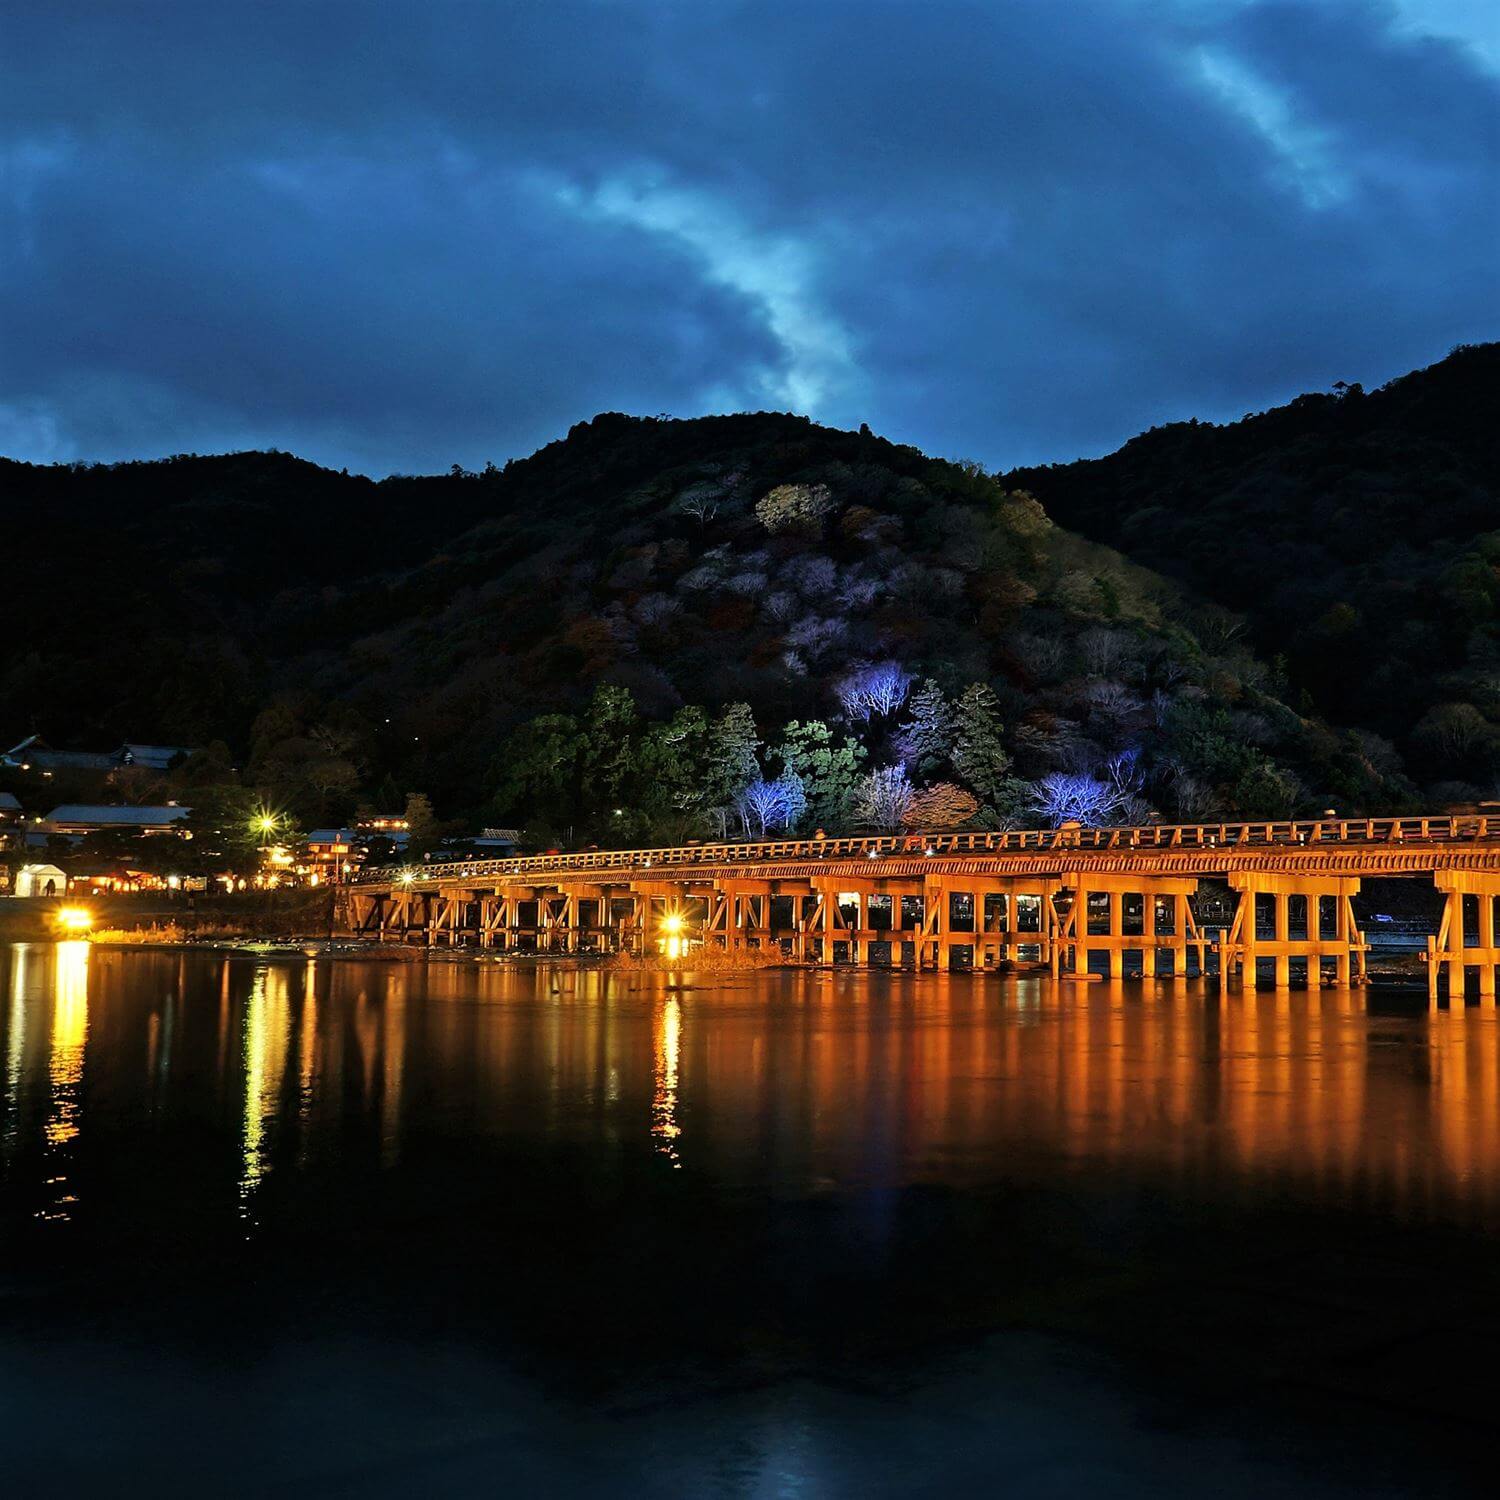 The fantastic illumination “Hanatouro” in Arashiyama, Kyoto = Shutterstock 2